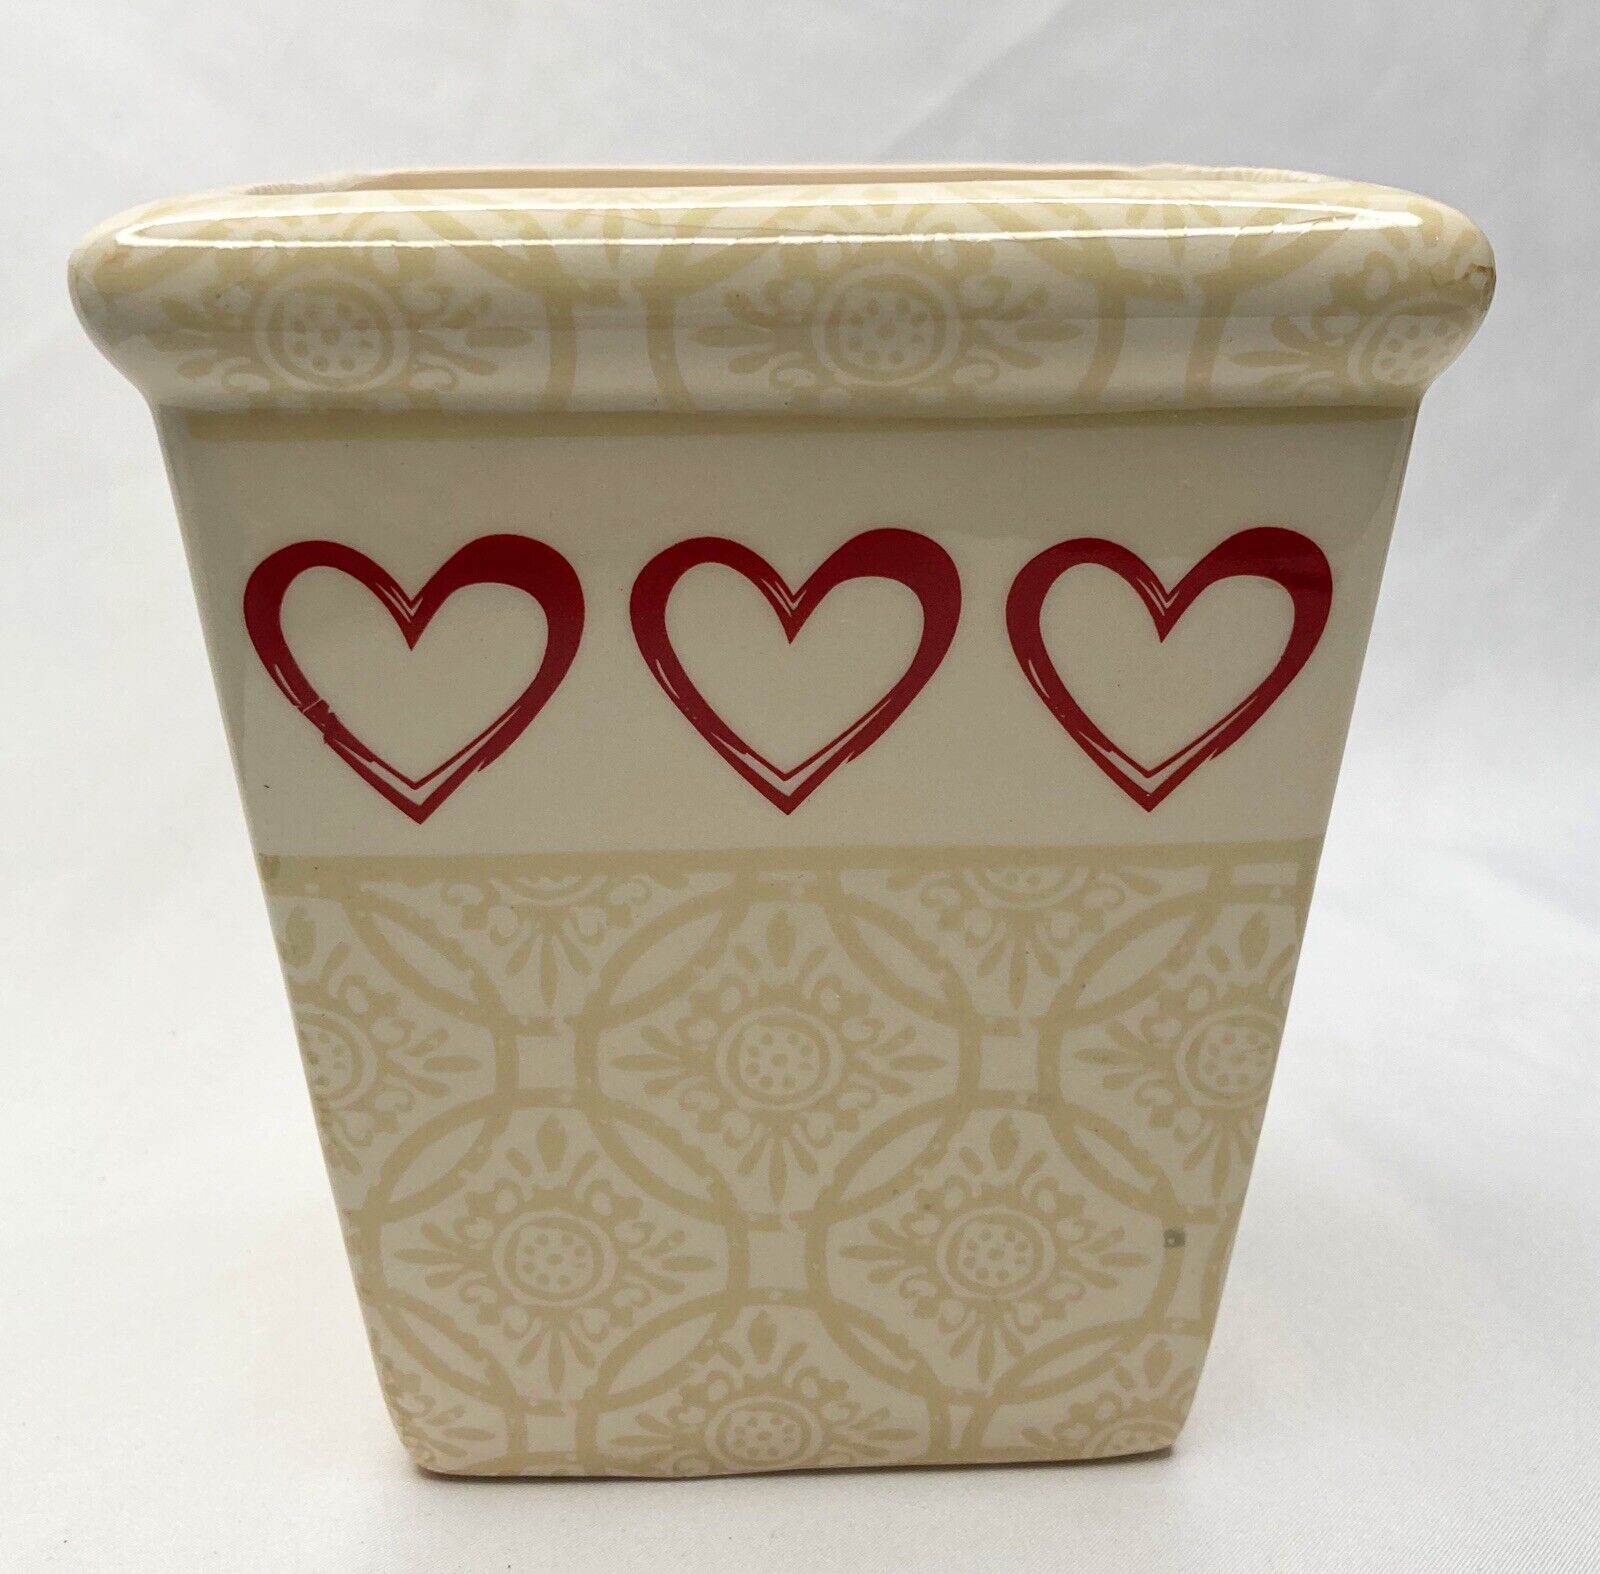 Confront Consistent Visible Edible Arrangements Valentines Heart Vase Ceramic Pot Planter By Berry  Direct 5” | eBay